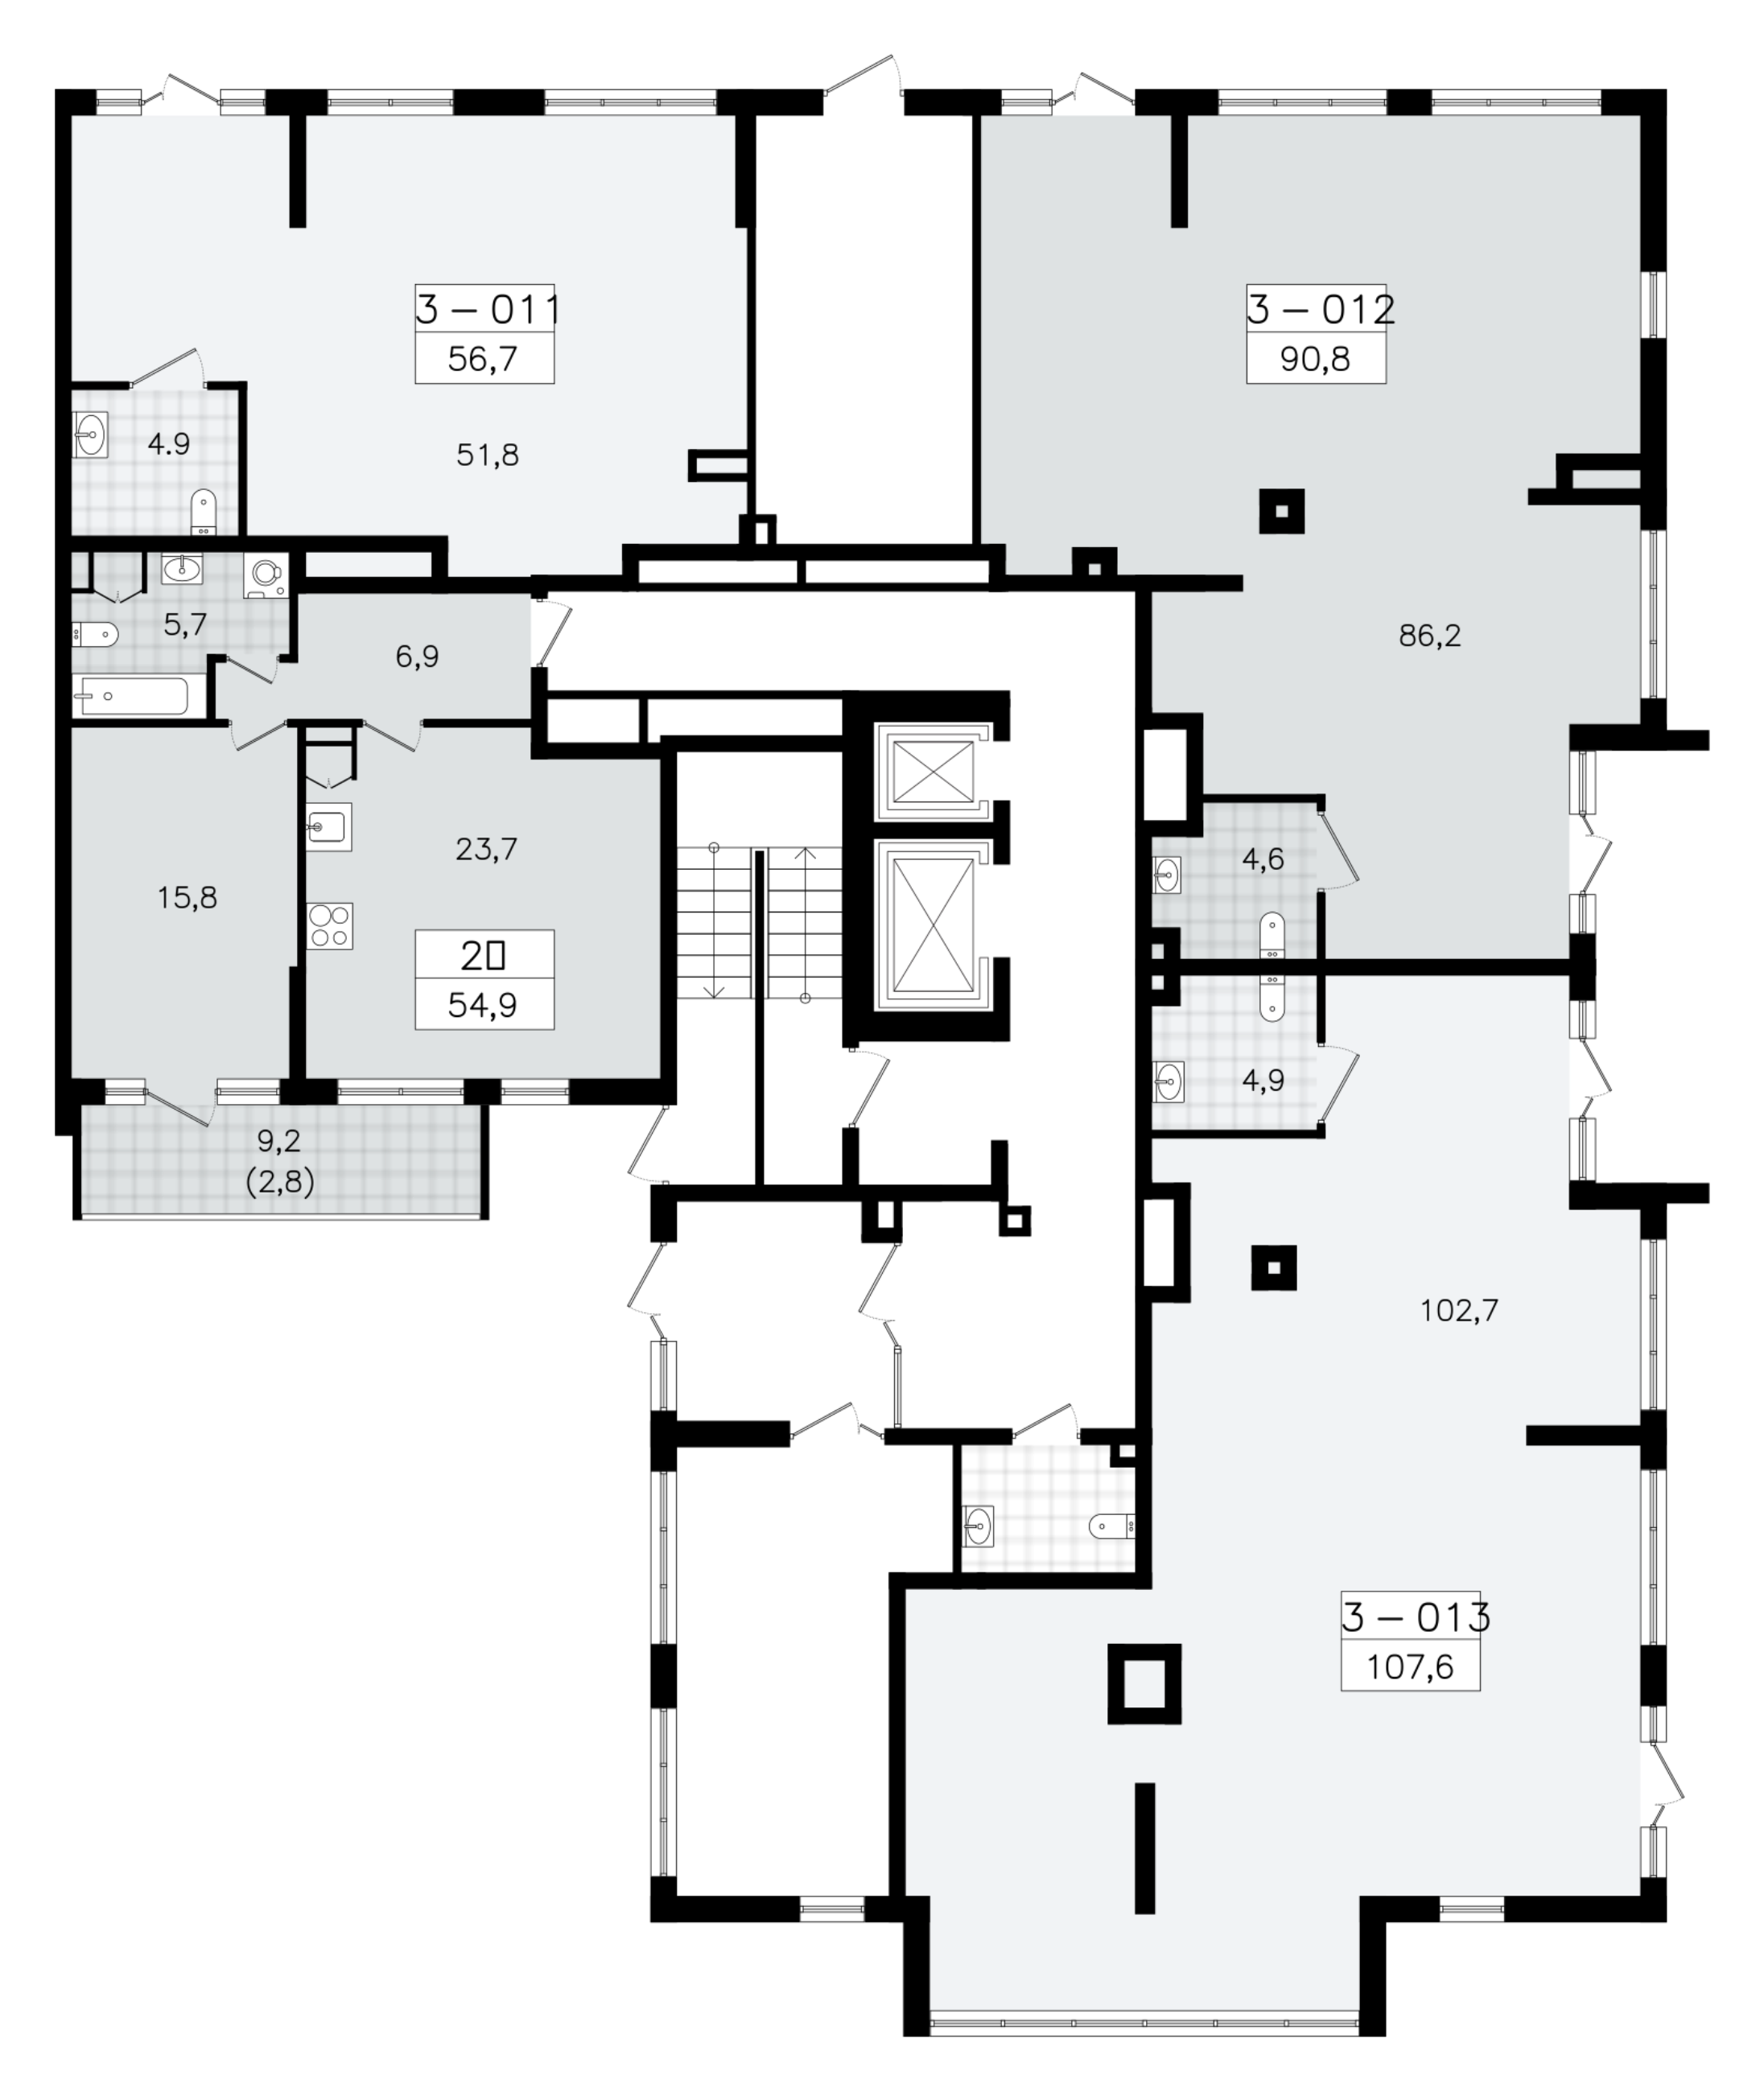 Помещение, 107.6 м² в ЖК "А101 Всеволожск" - планировка этажа